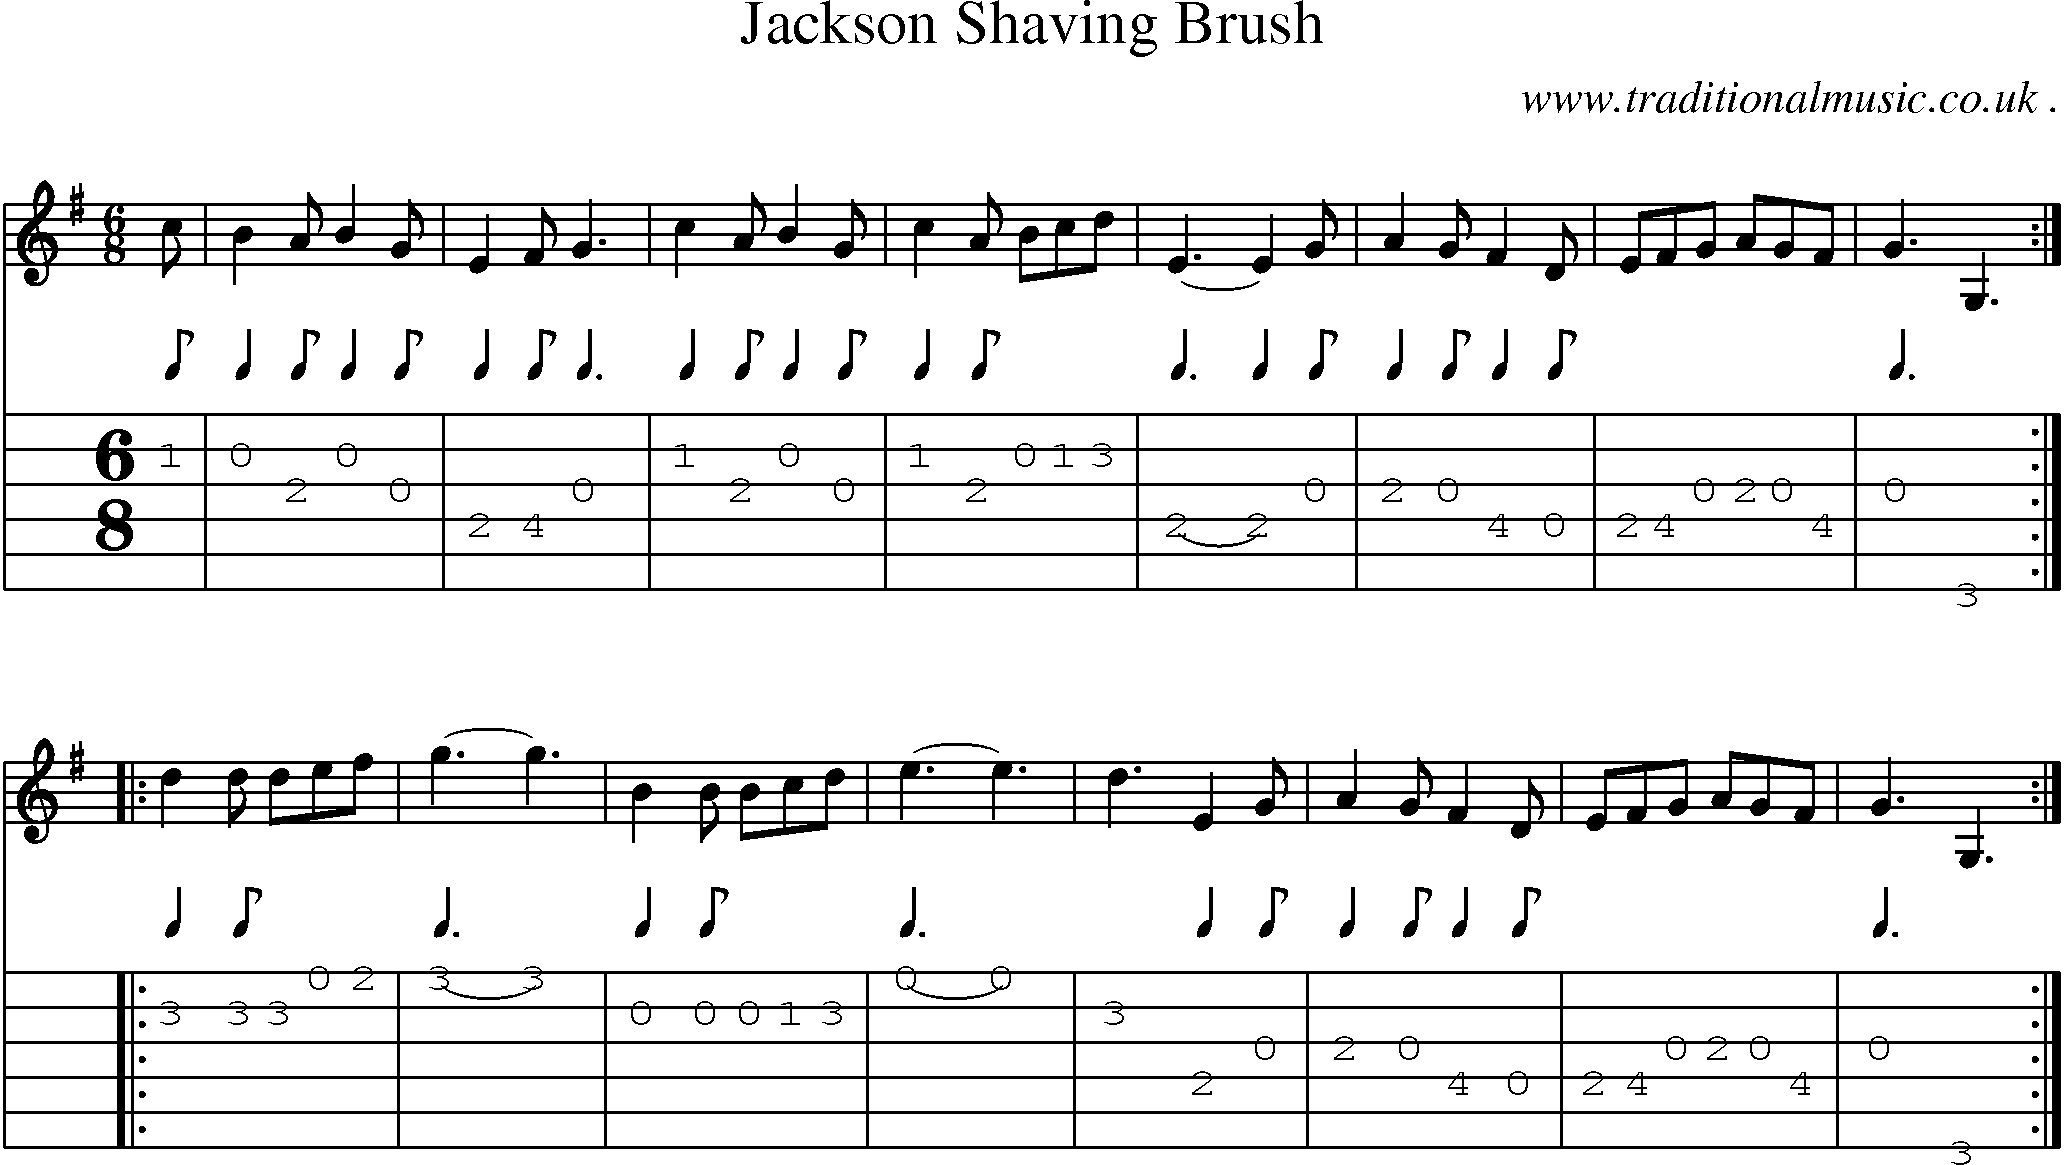 Sheet-Music and Guitar Tabs for Jackson Shaving Brush